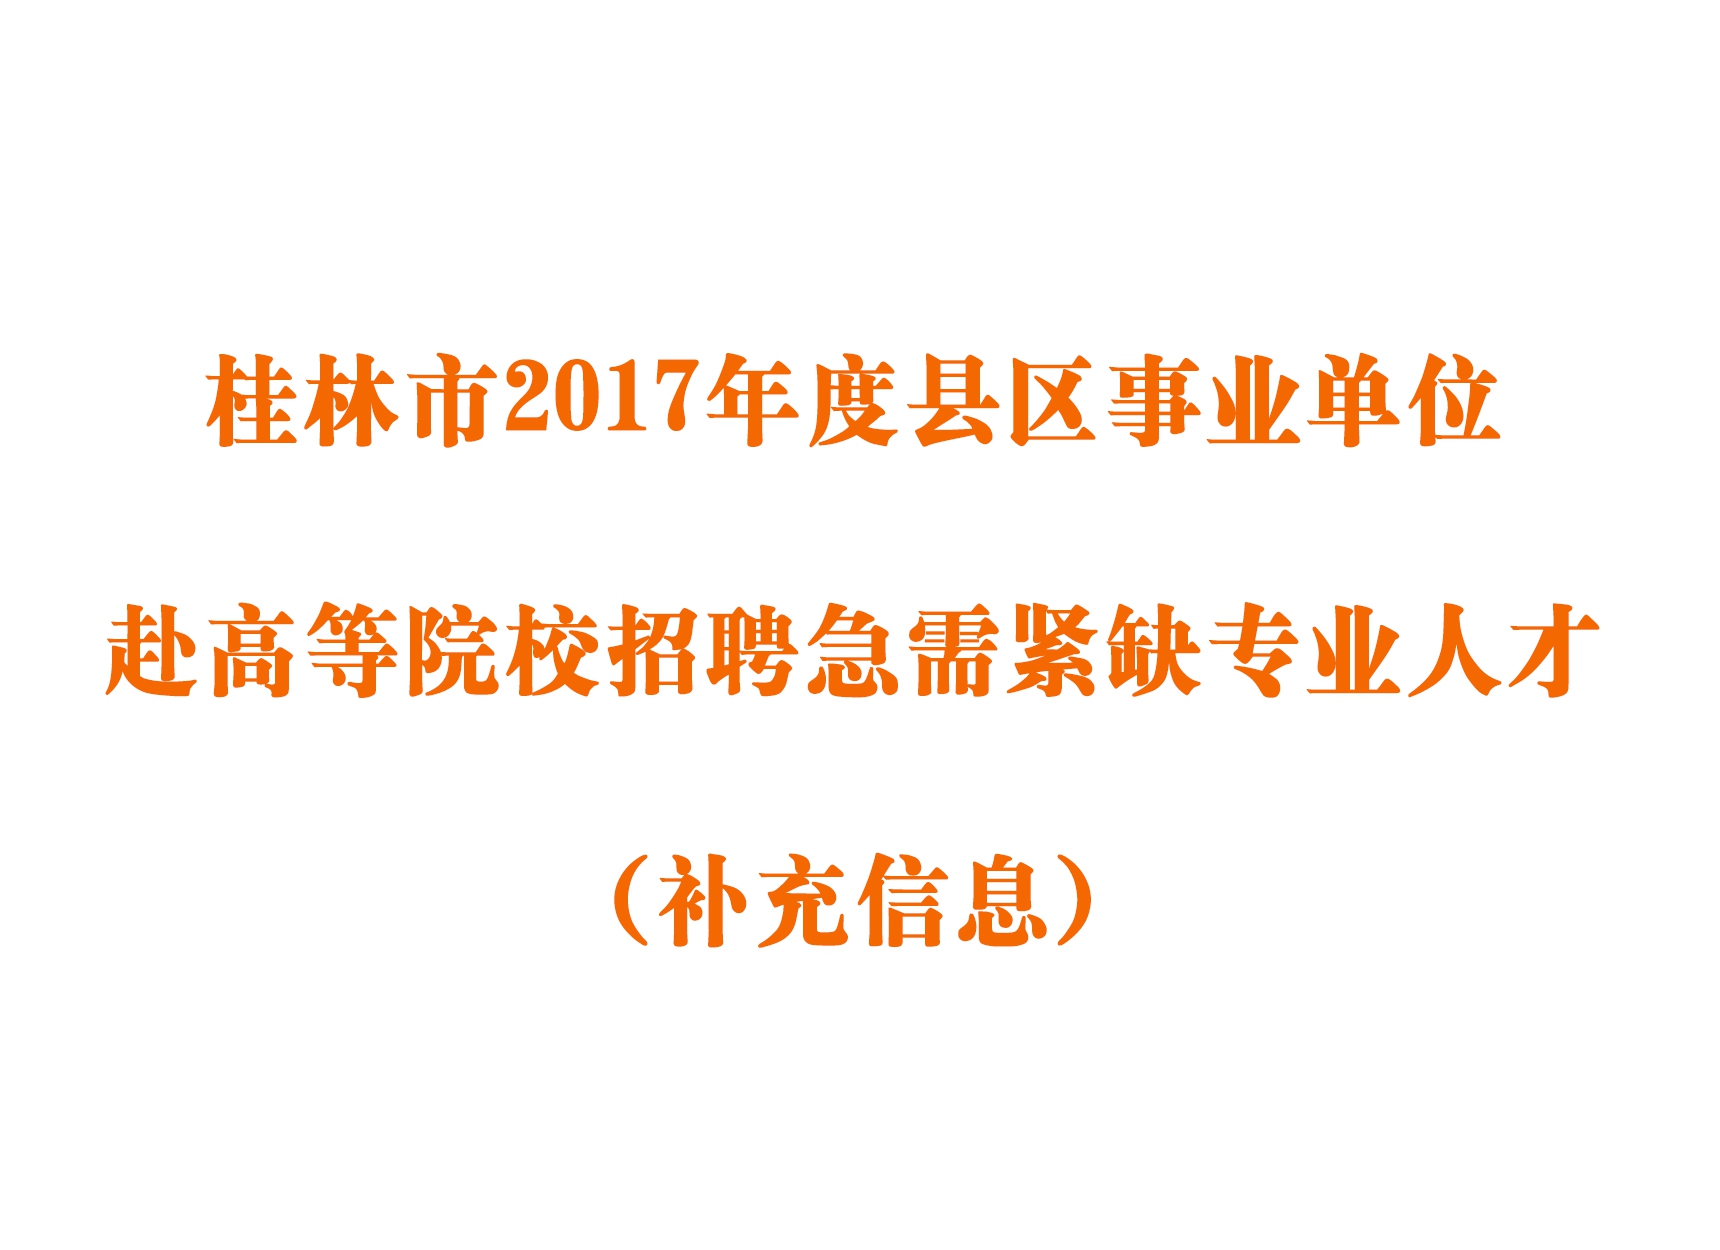 桂林市2017年度县区事业单位赴高等院校招聘急需紧缺专业人才